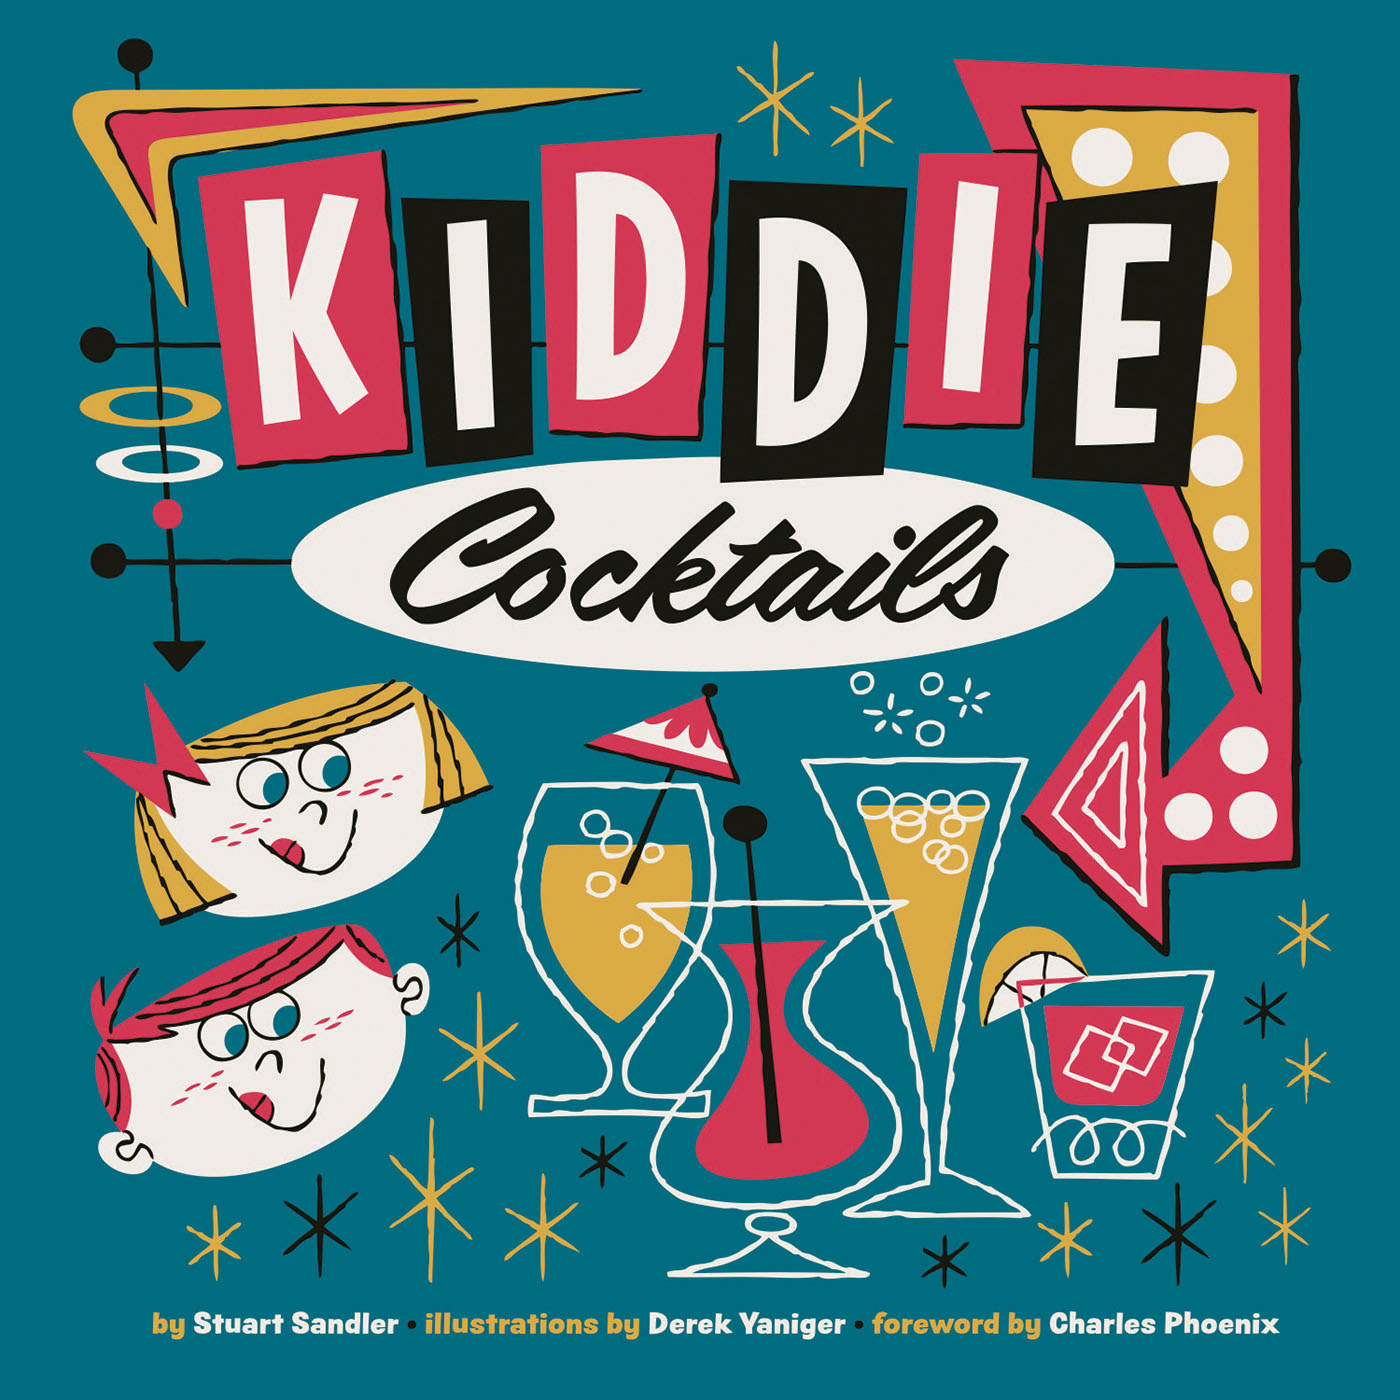 Kiddie Cocktails by Stuart Sandler